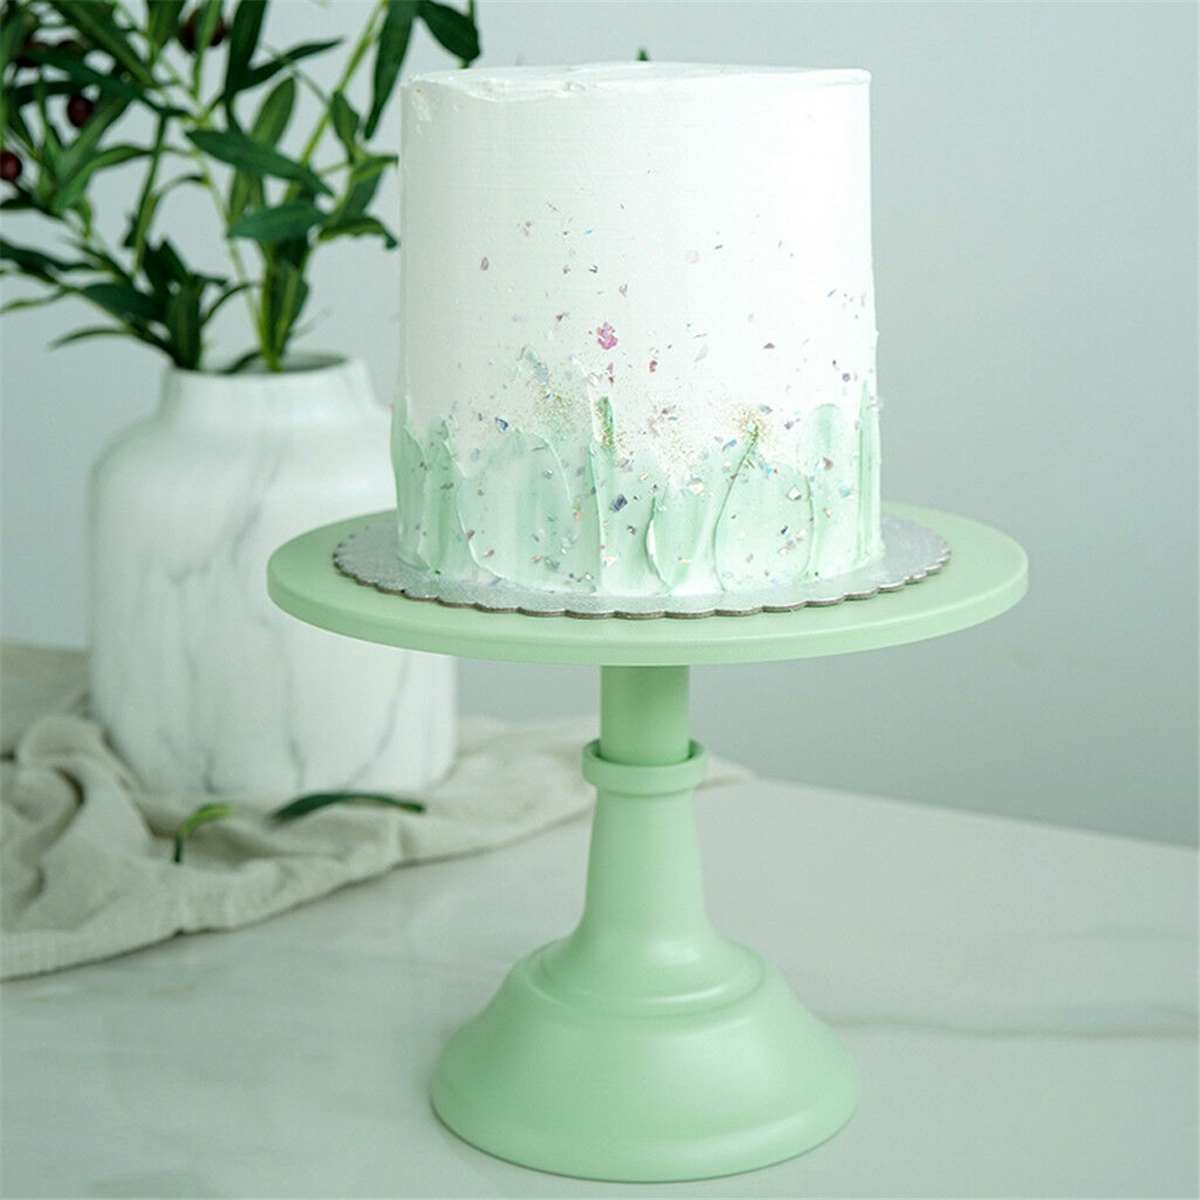 1012-Inch-Iron-Green-Round-Cake-Stand-Pedestal-Dessert-Holder-Wedding-Party-Decorations-1476996-1